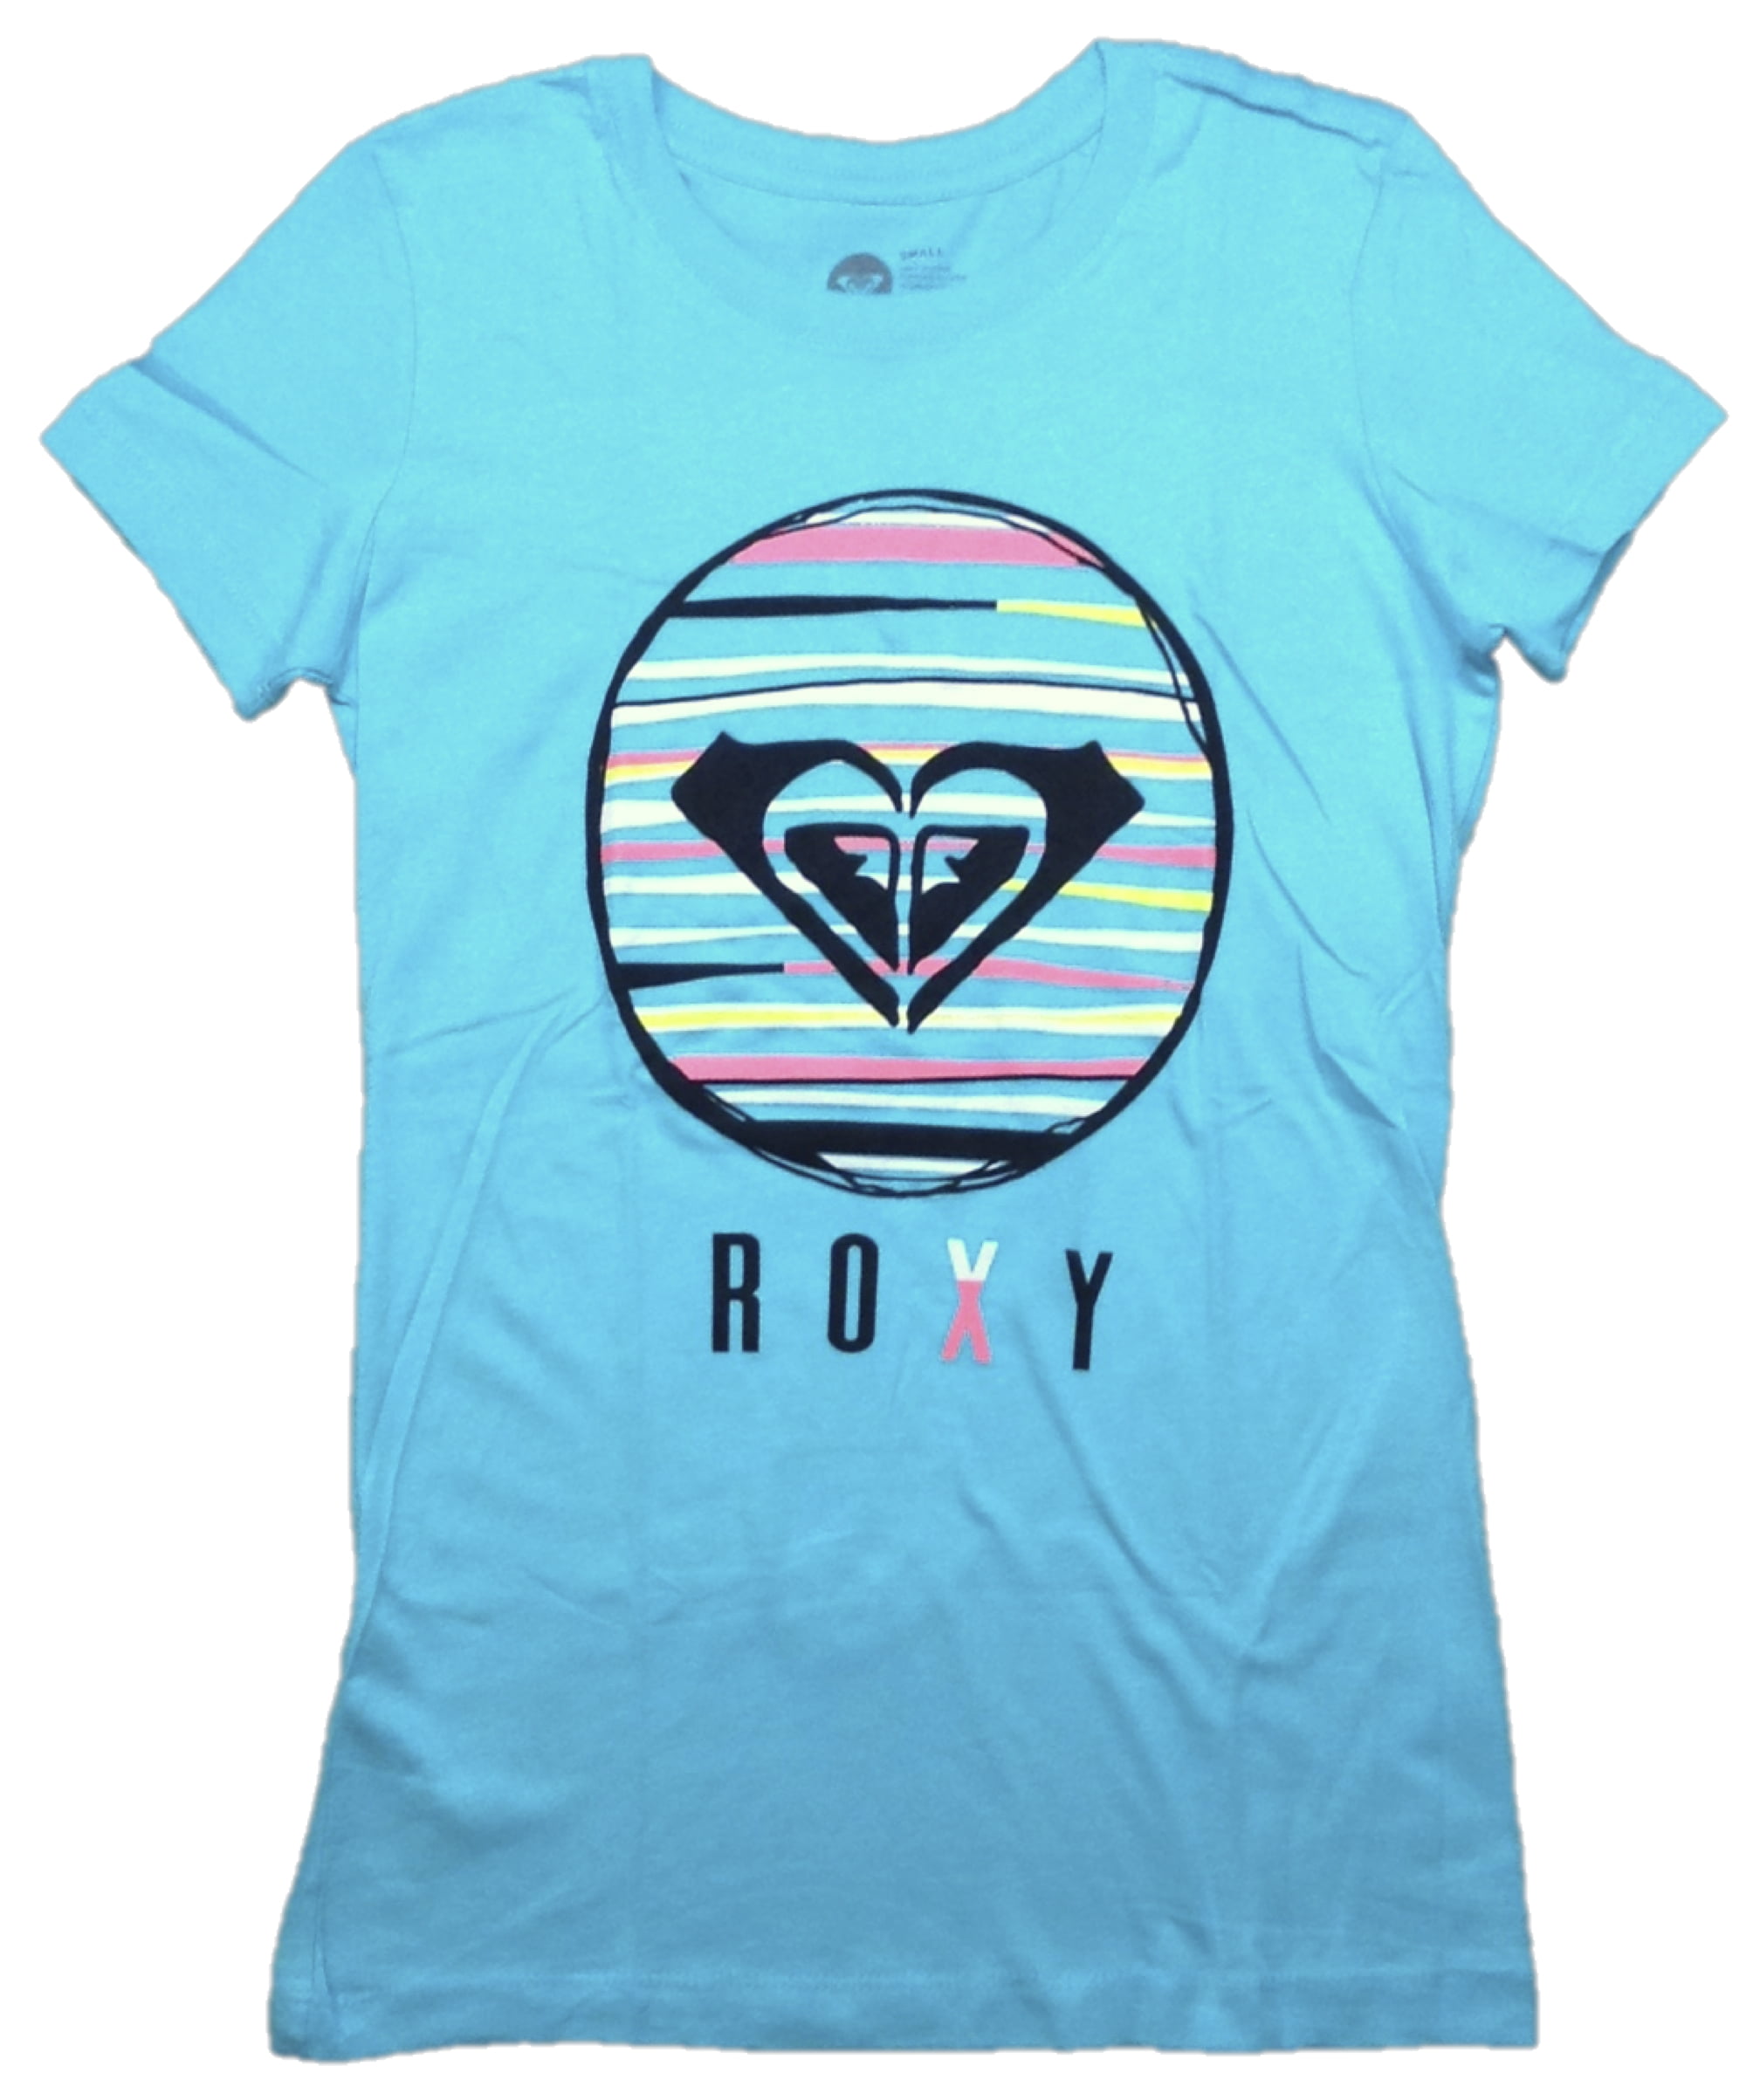 Details about   Roxy Women's I Got The Funk Drapey T-Shirt Choose SZ/color